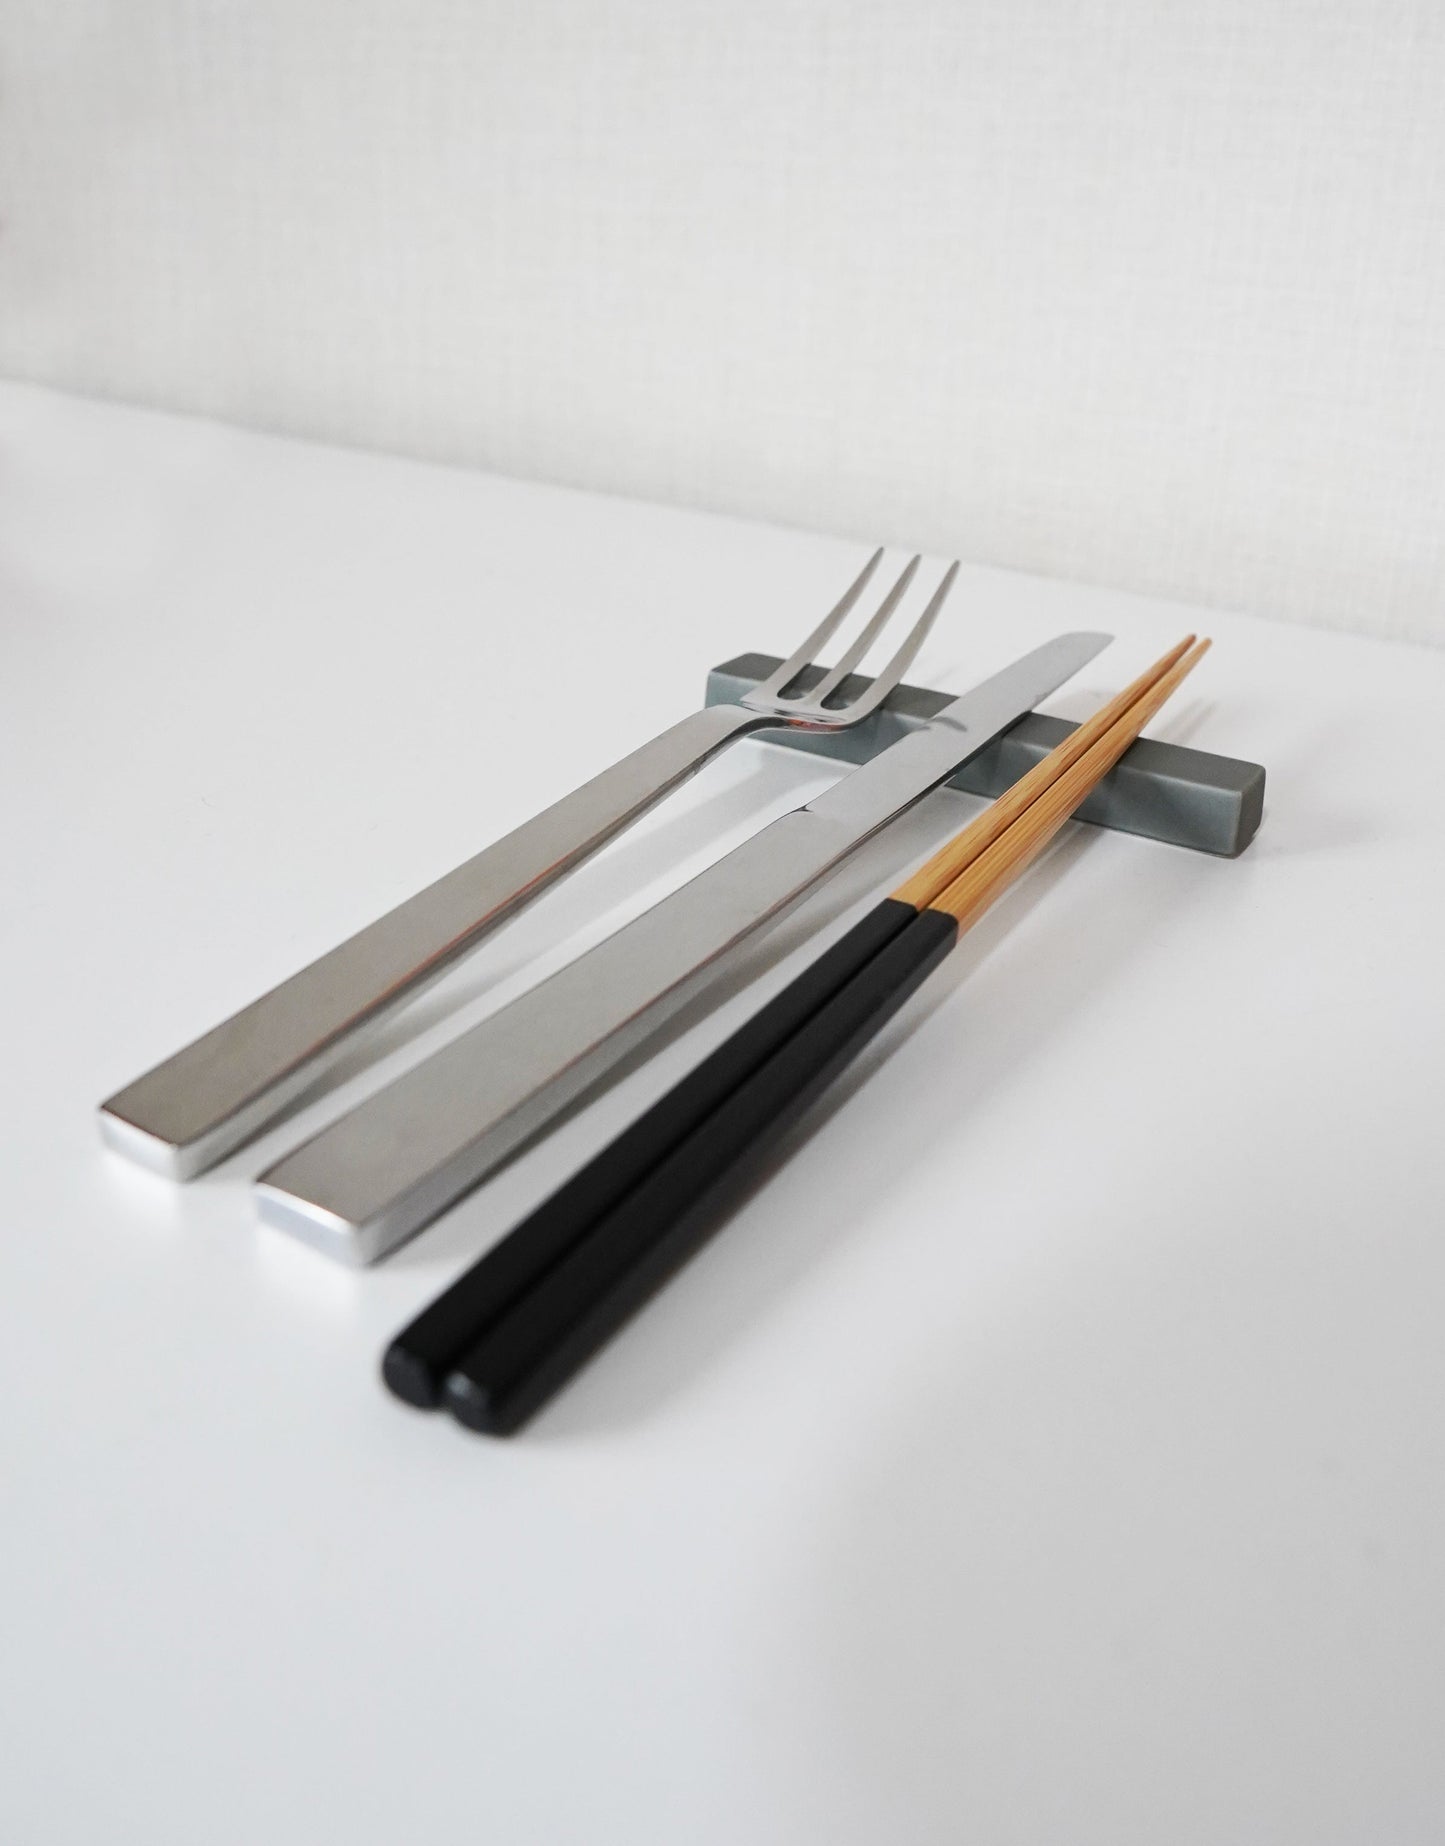 Cutlery rest By koselig-arita